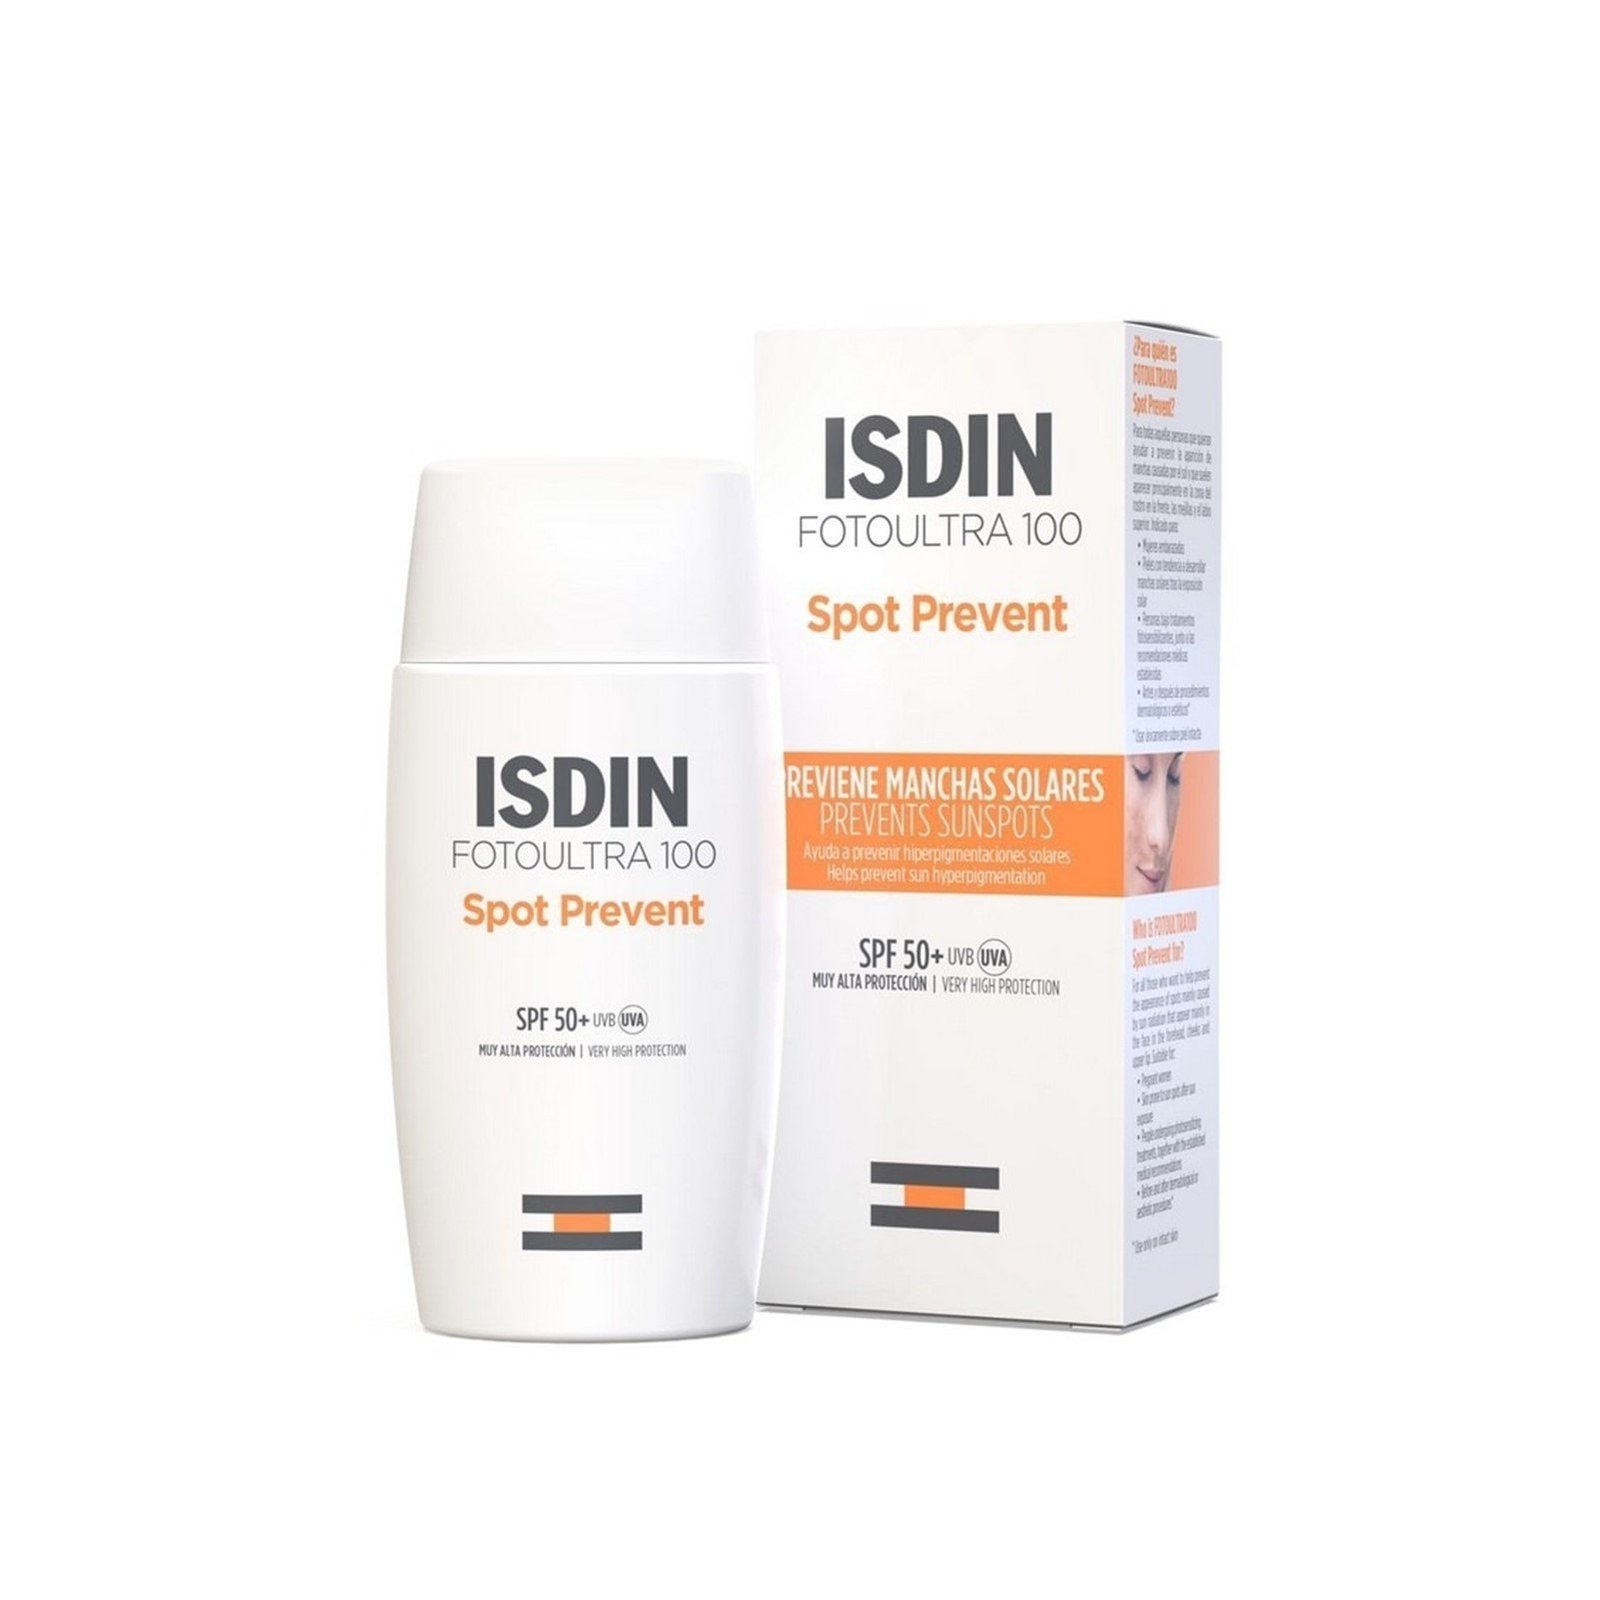 ISDIN FotoUltra 100 Spot Prevent Sunscreen SPF50+